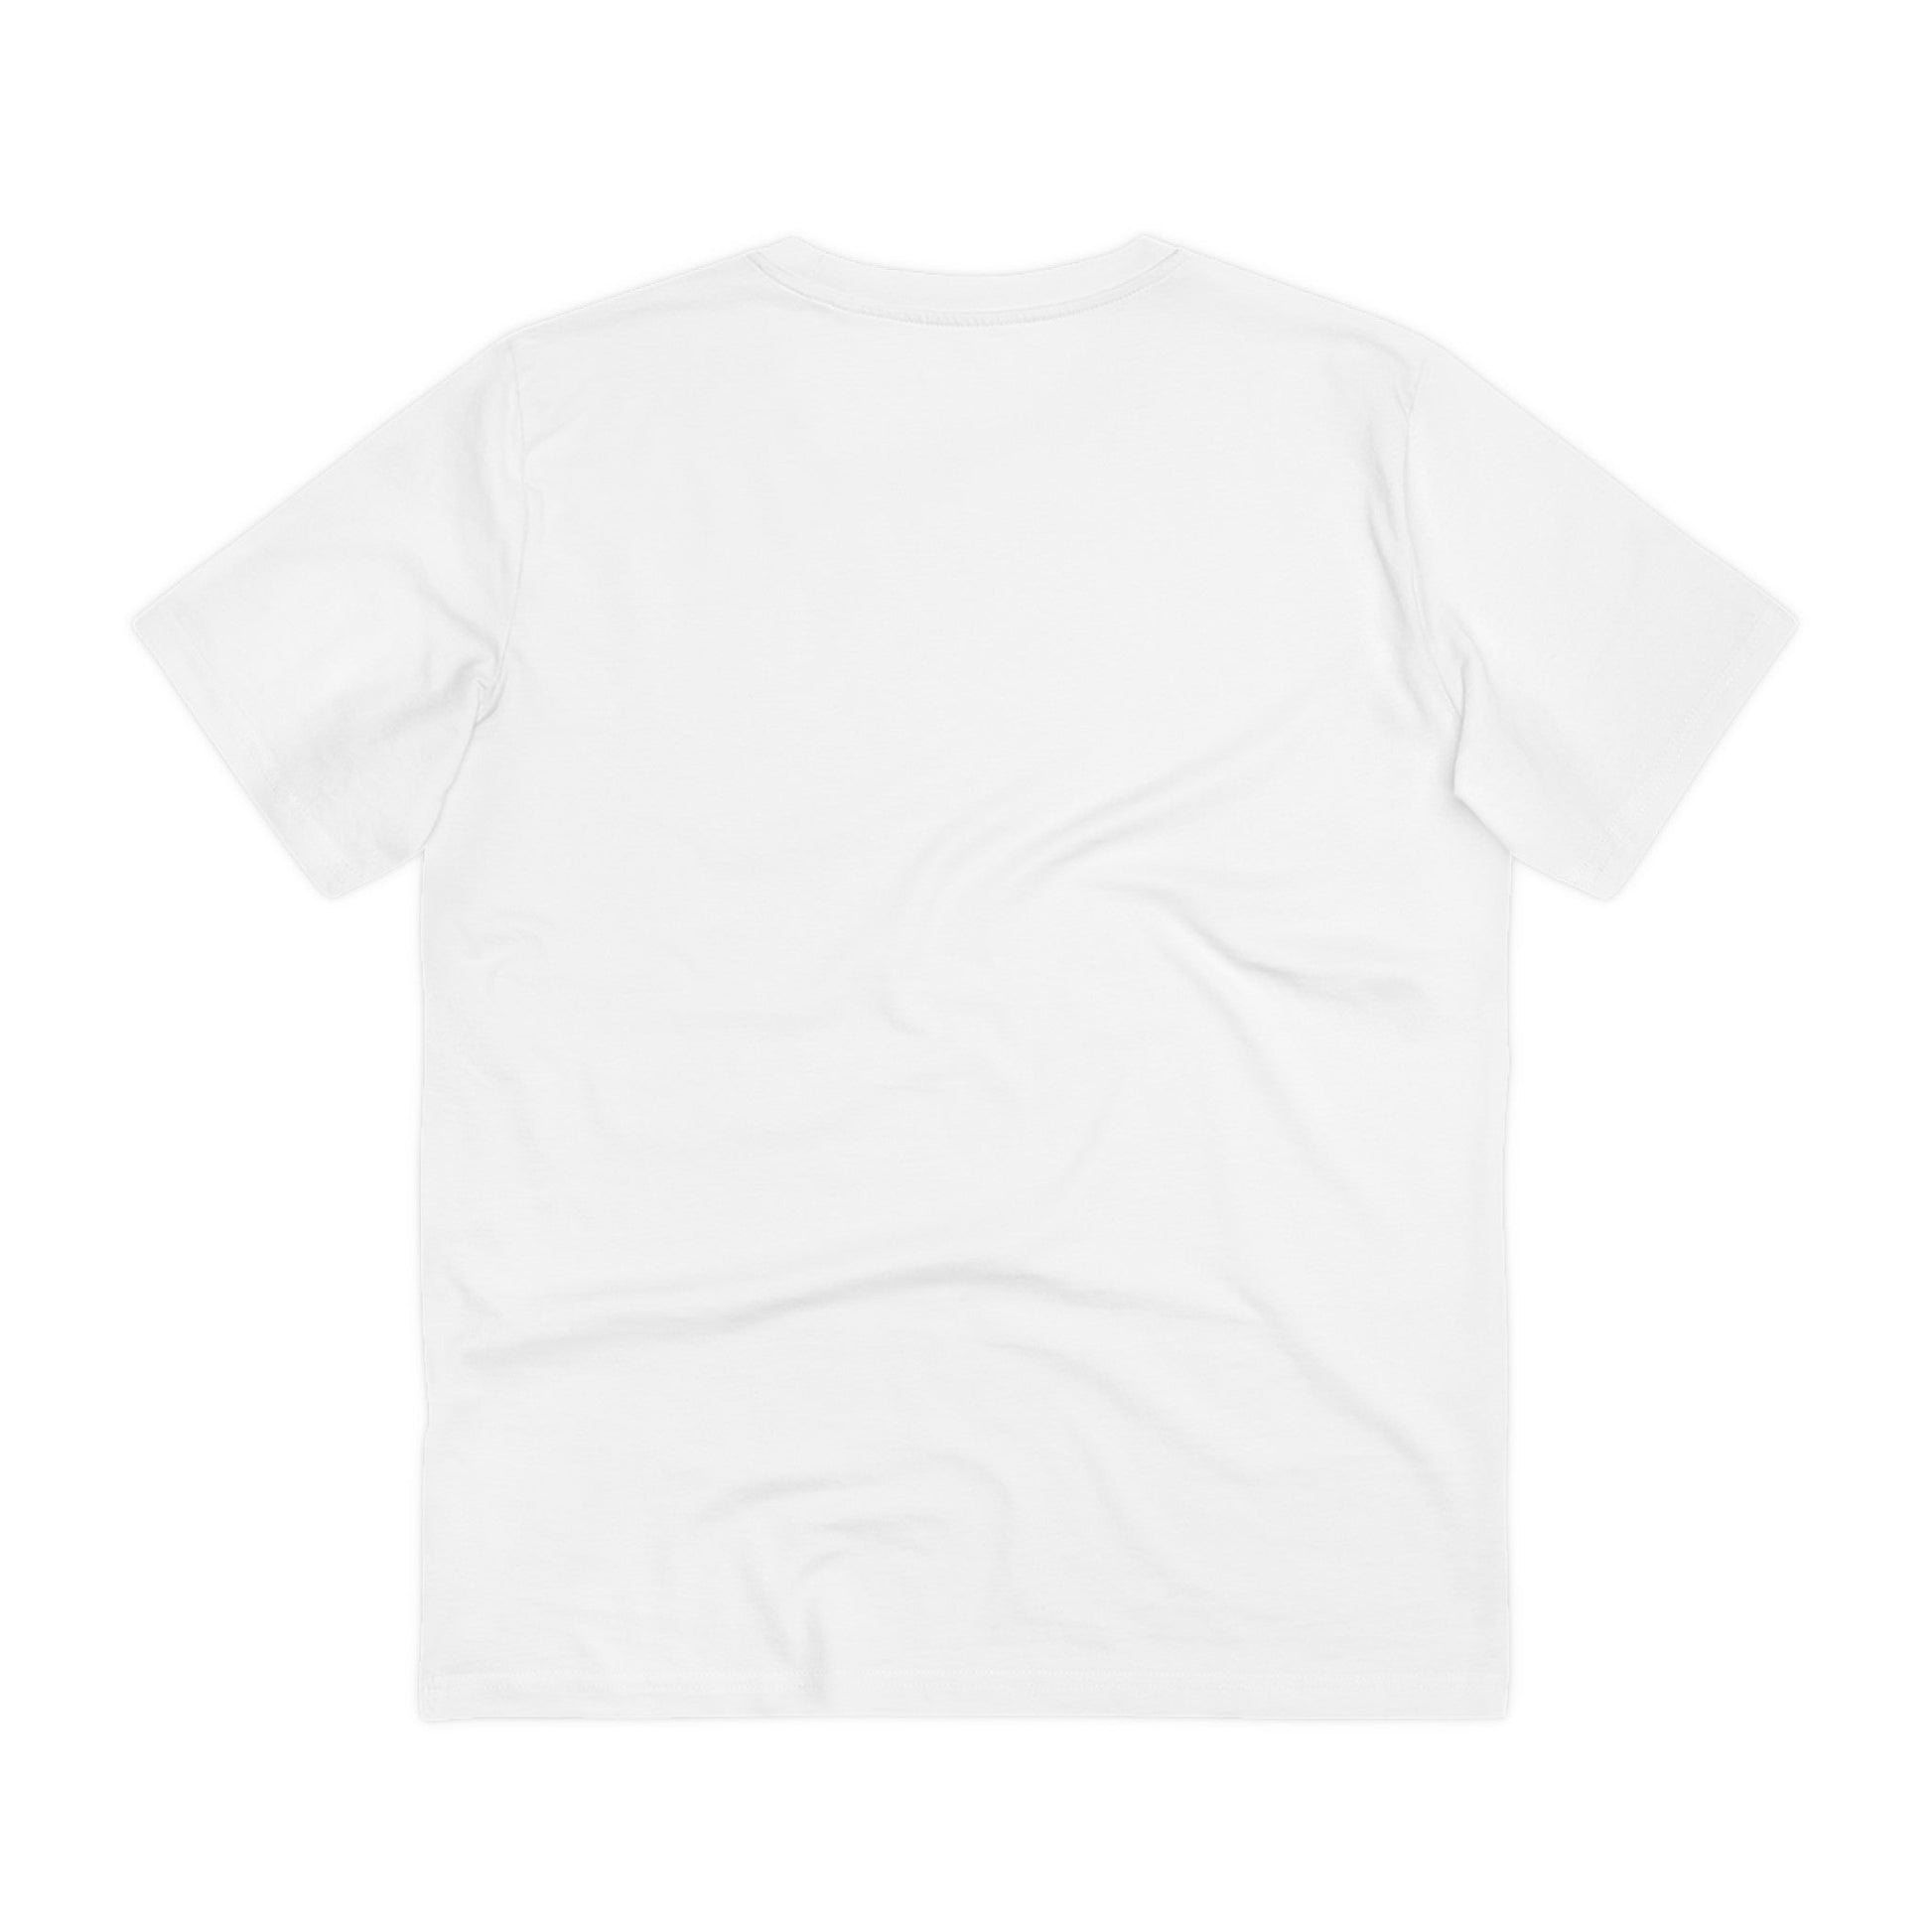 Printify T-Shirt Strawberry cute Unicorn - Unicorn World - Front Design